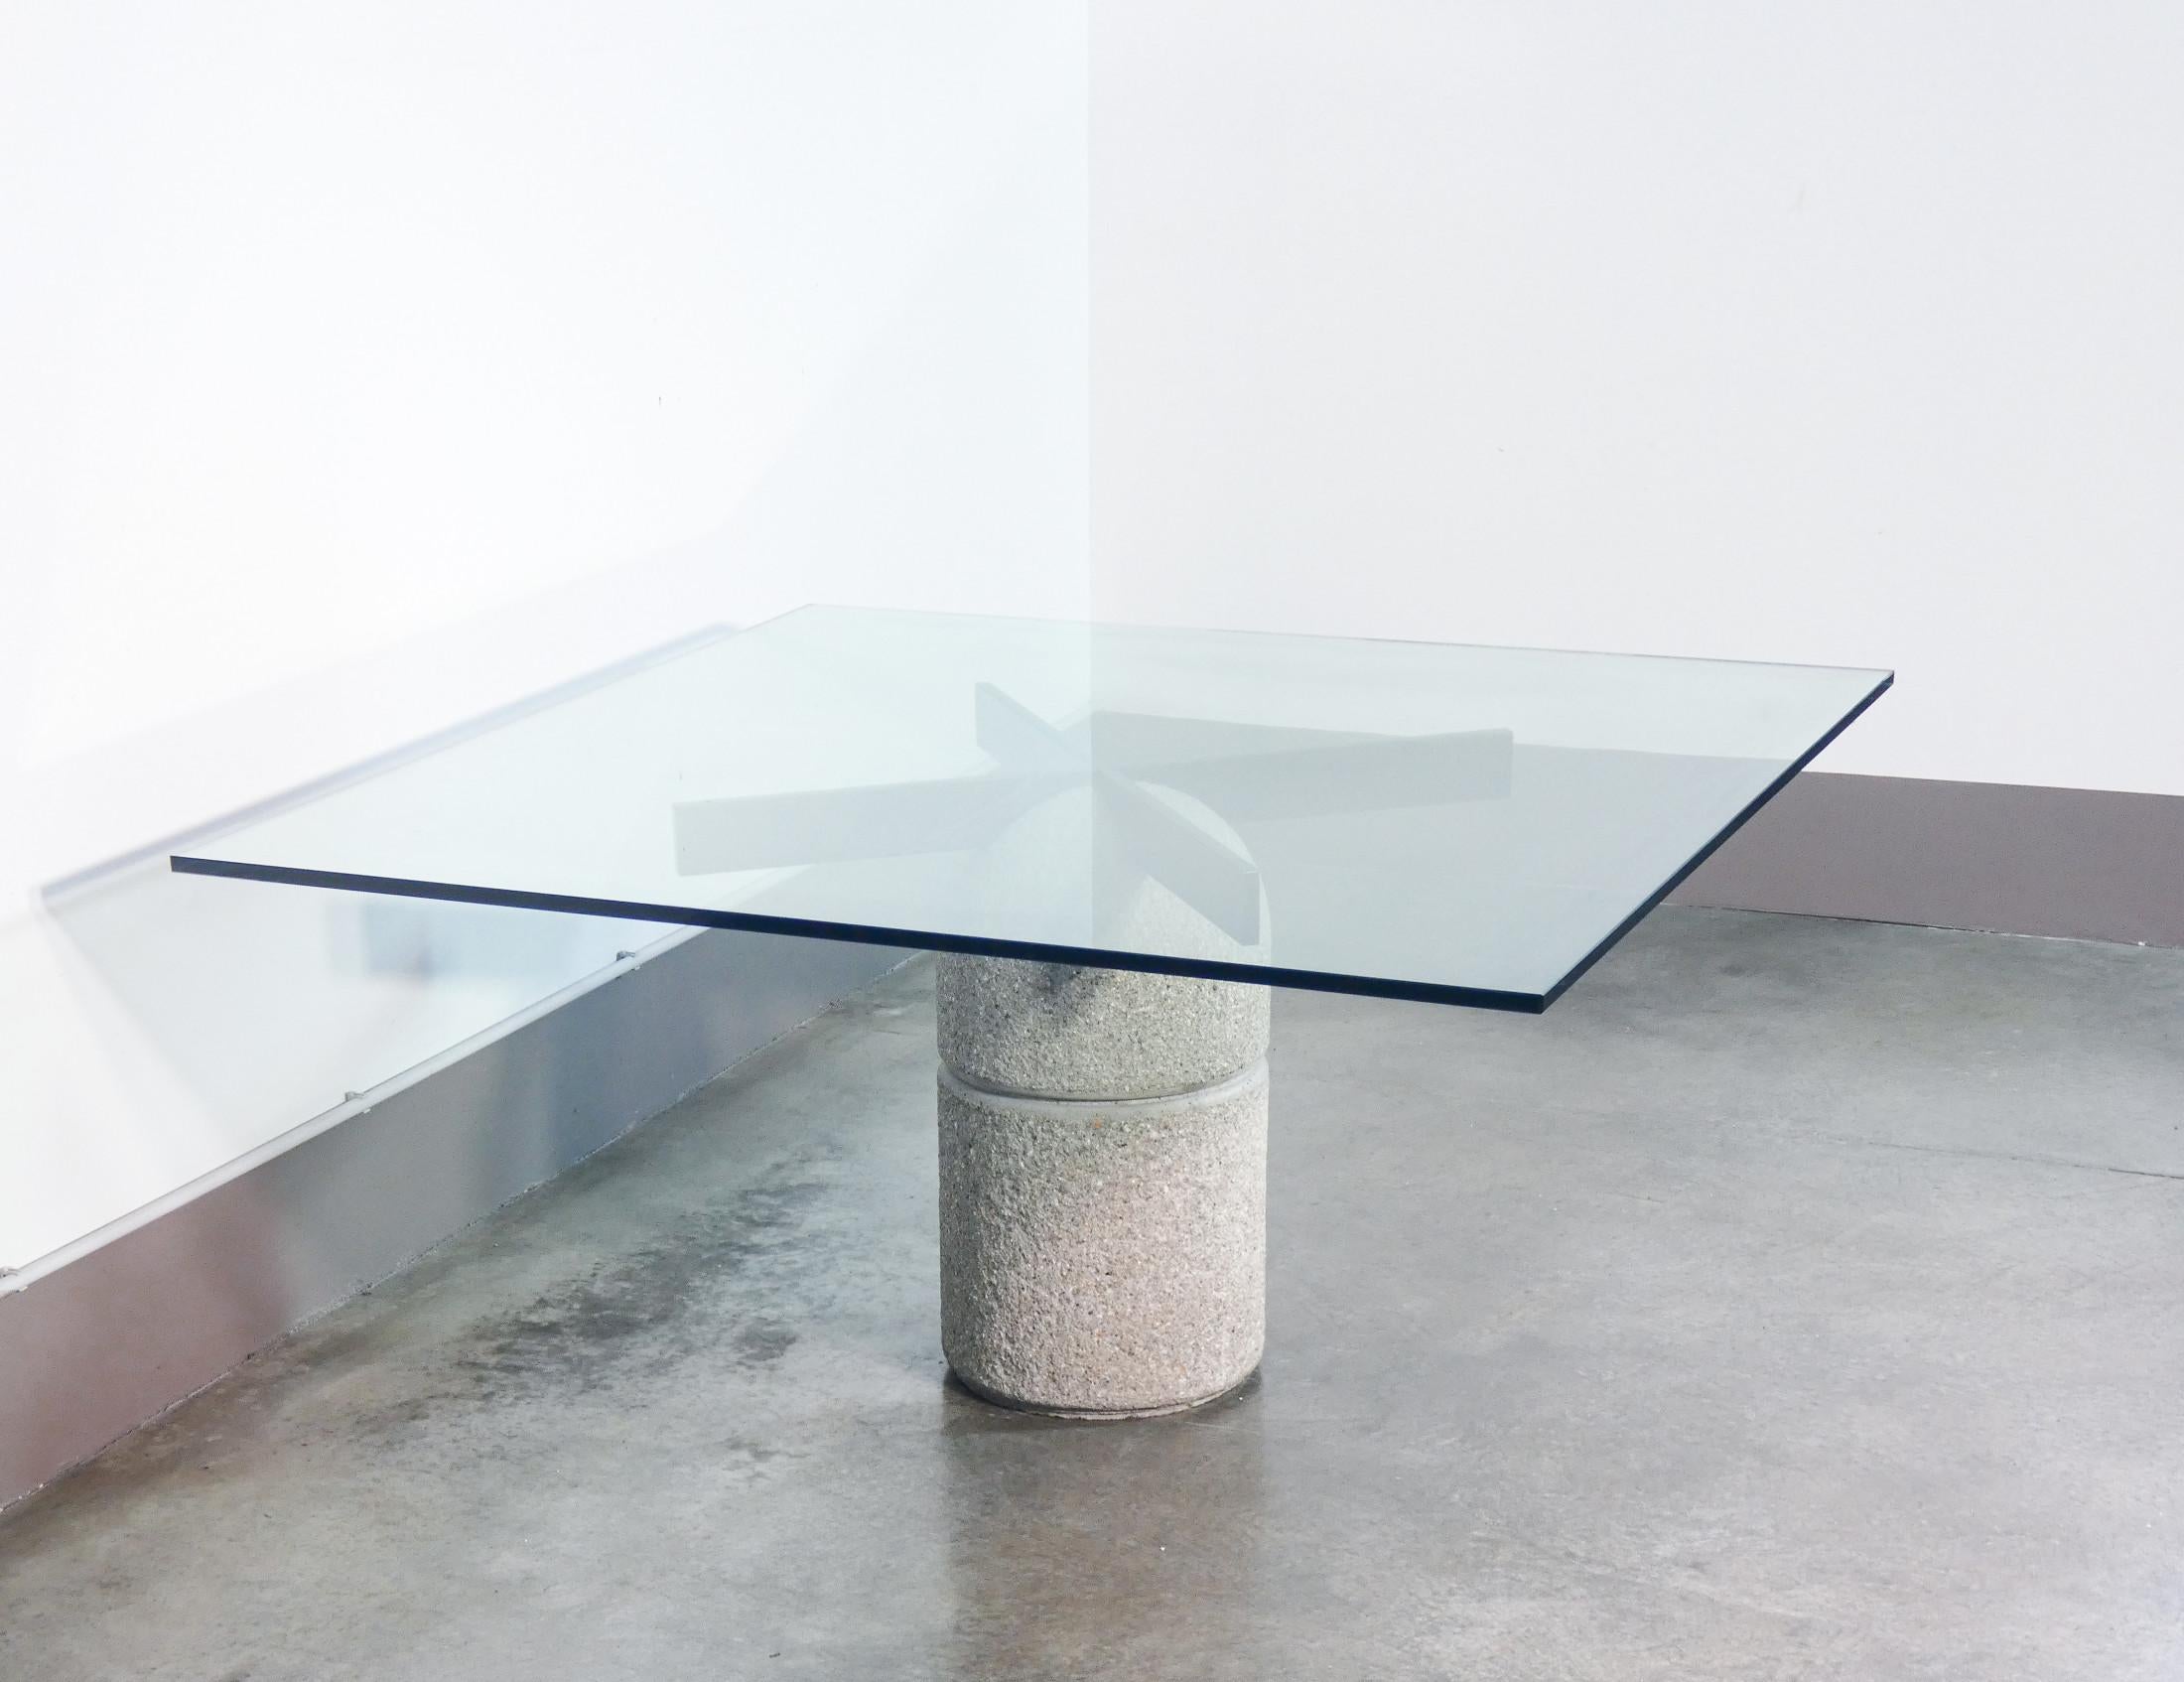 Paracarro Tisch, Entwurf
von Giovanni OFFREDI
für SAPORITI.
Kristall-Oberteil,
betonsockel.

URSPRUNG
Italien

PERIOD
1973

DESIGNER
Giovanni